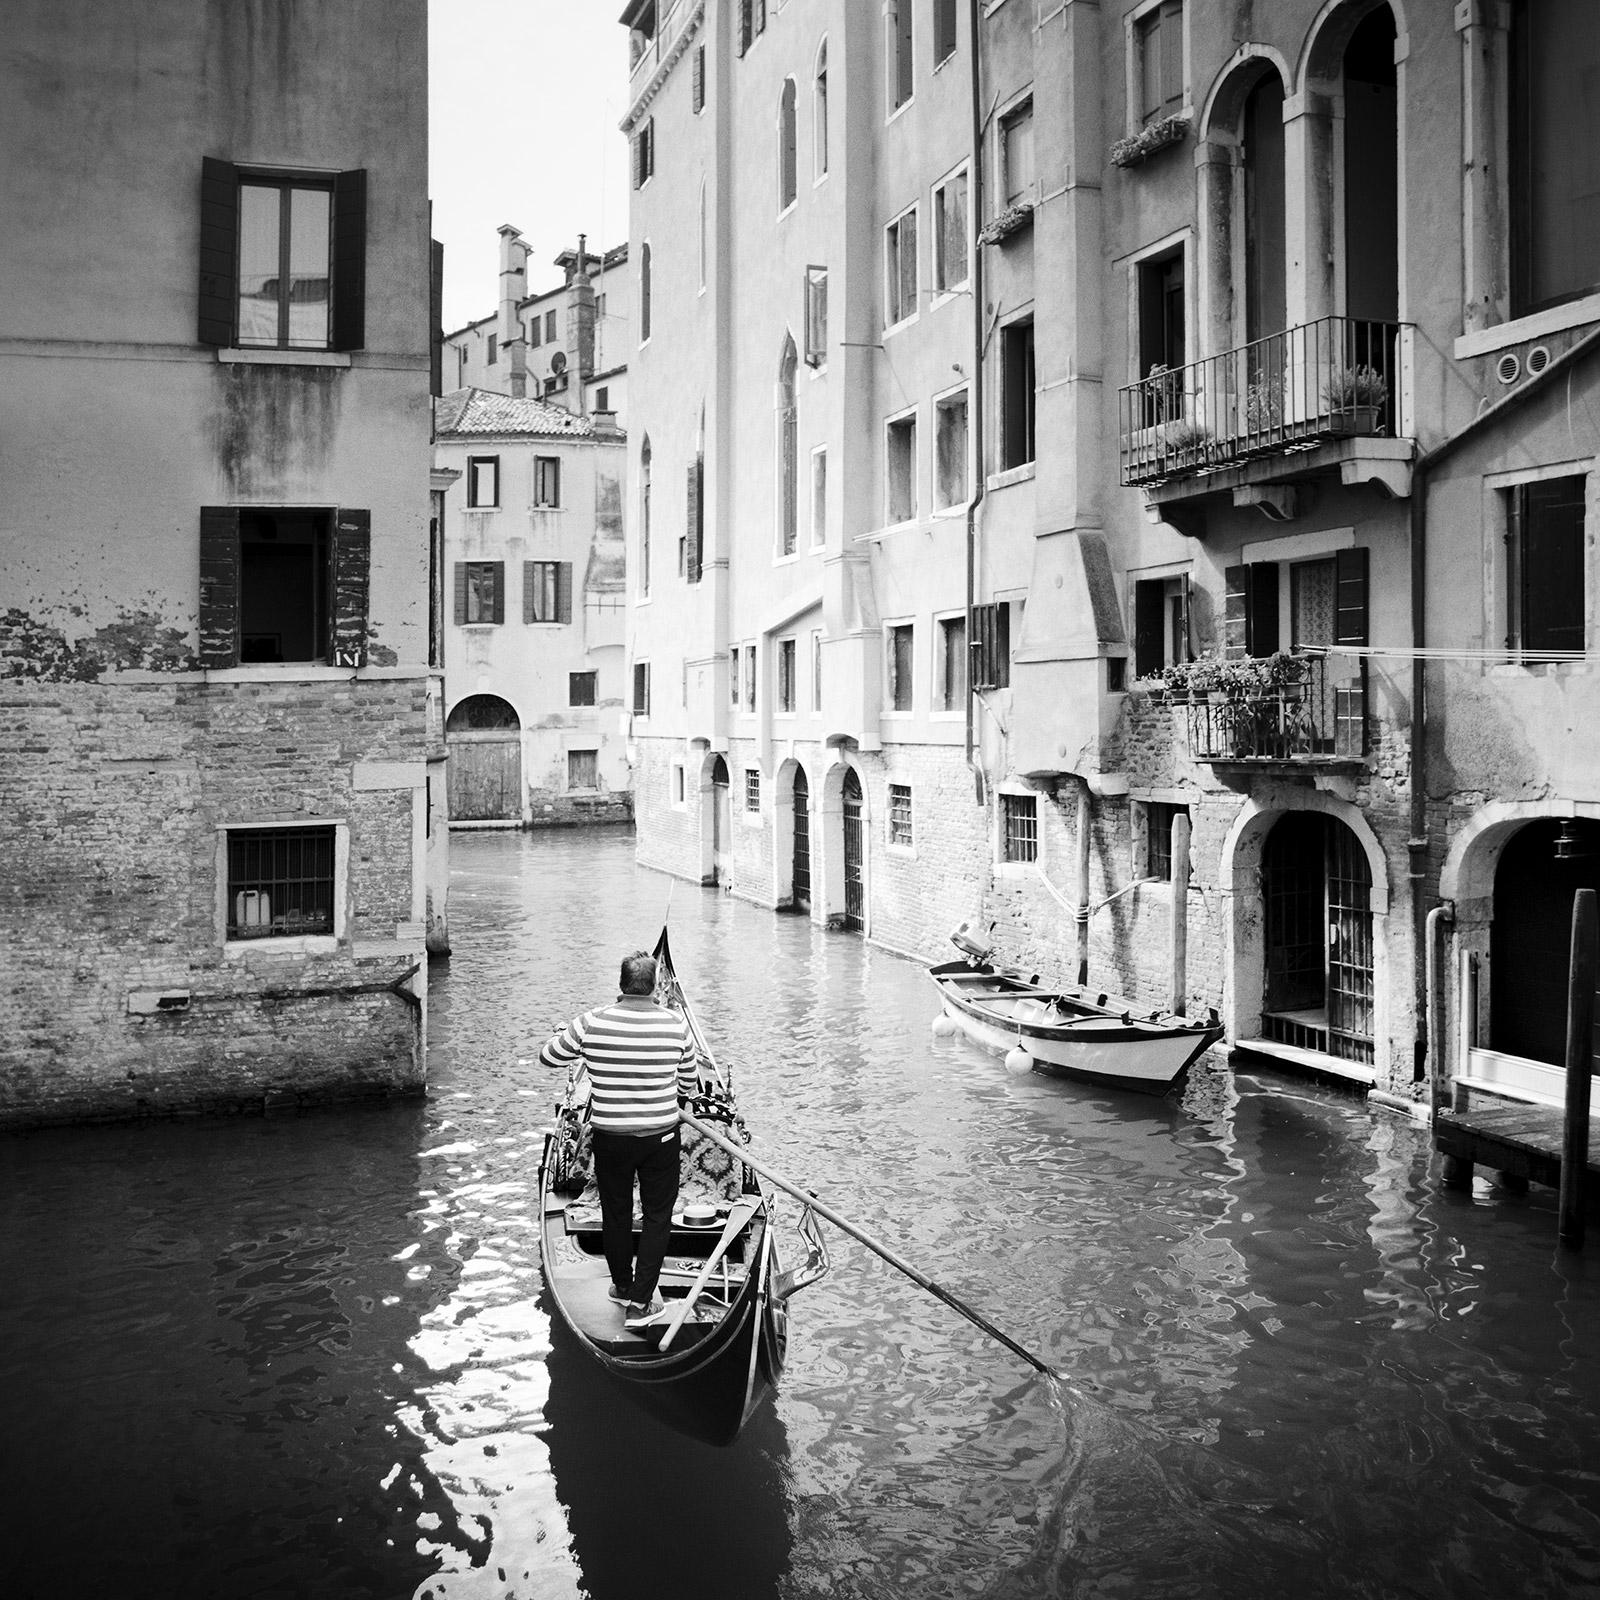 Gondoliere, Canal Grande, Venise, photographie d'art de paysage urbain en noir et blanc